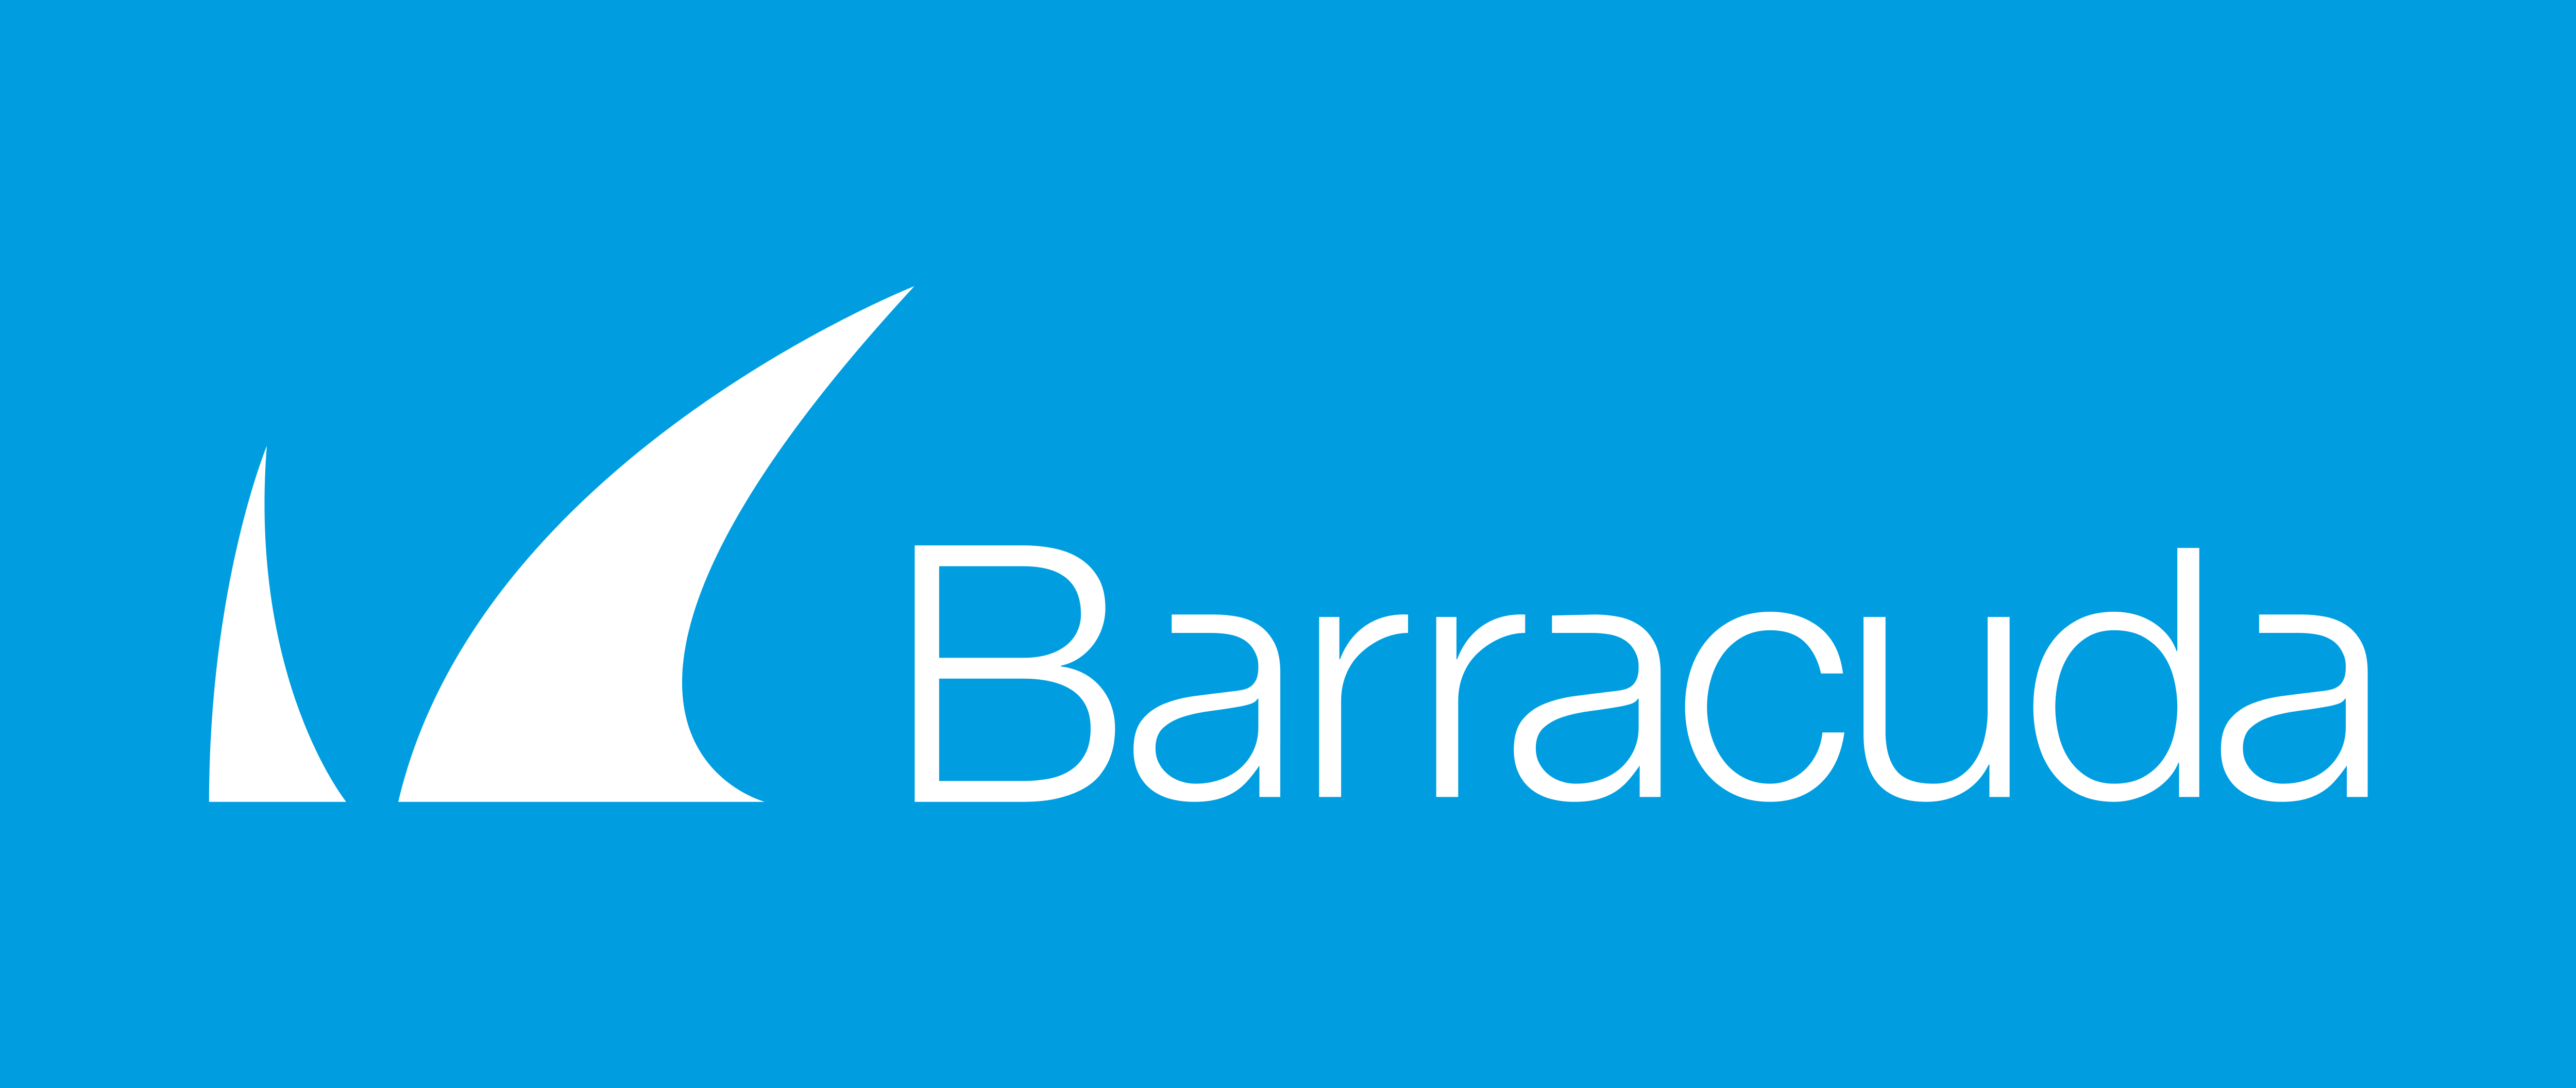 Barracuda Networks Logo Logodix